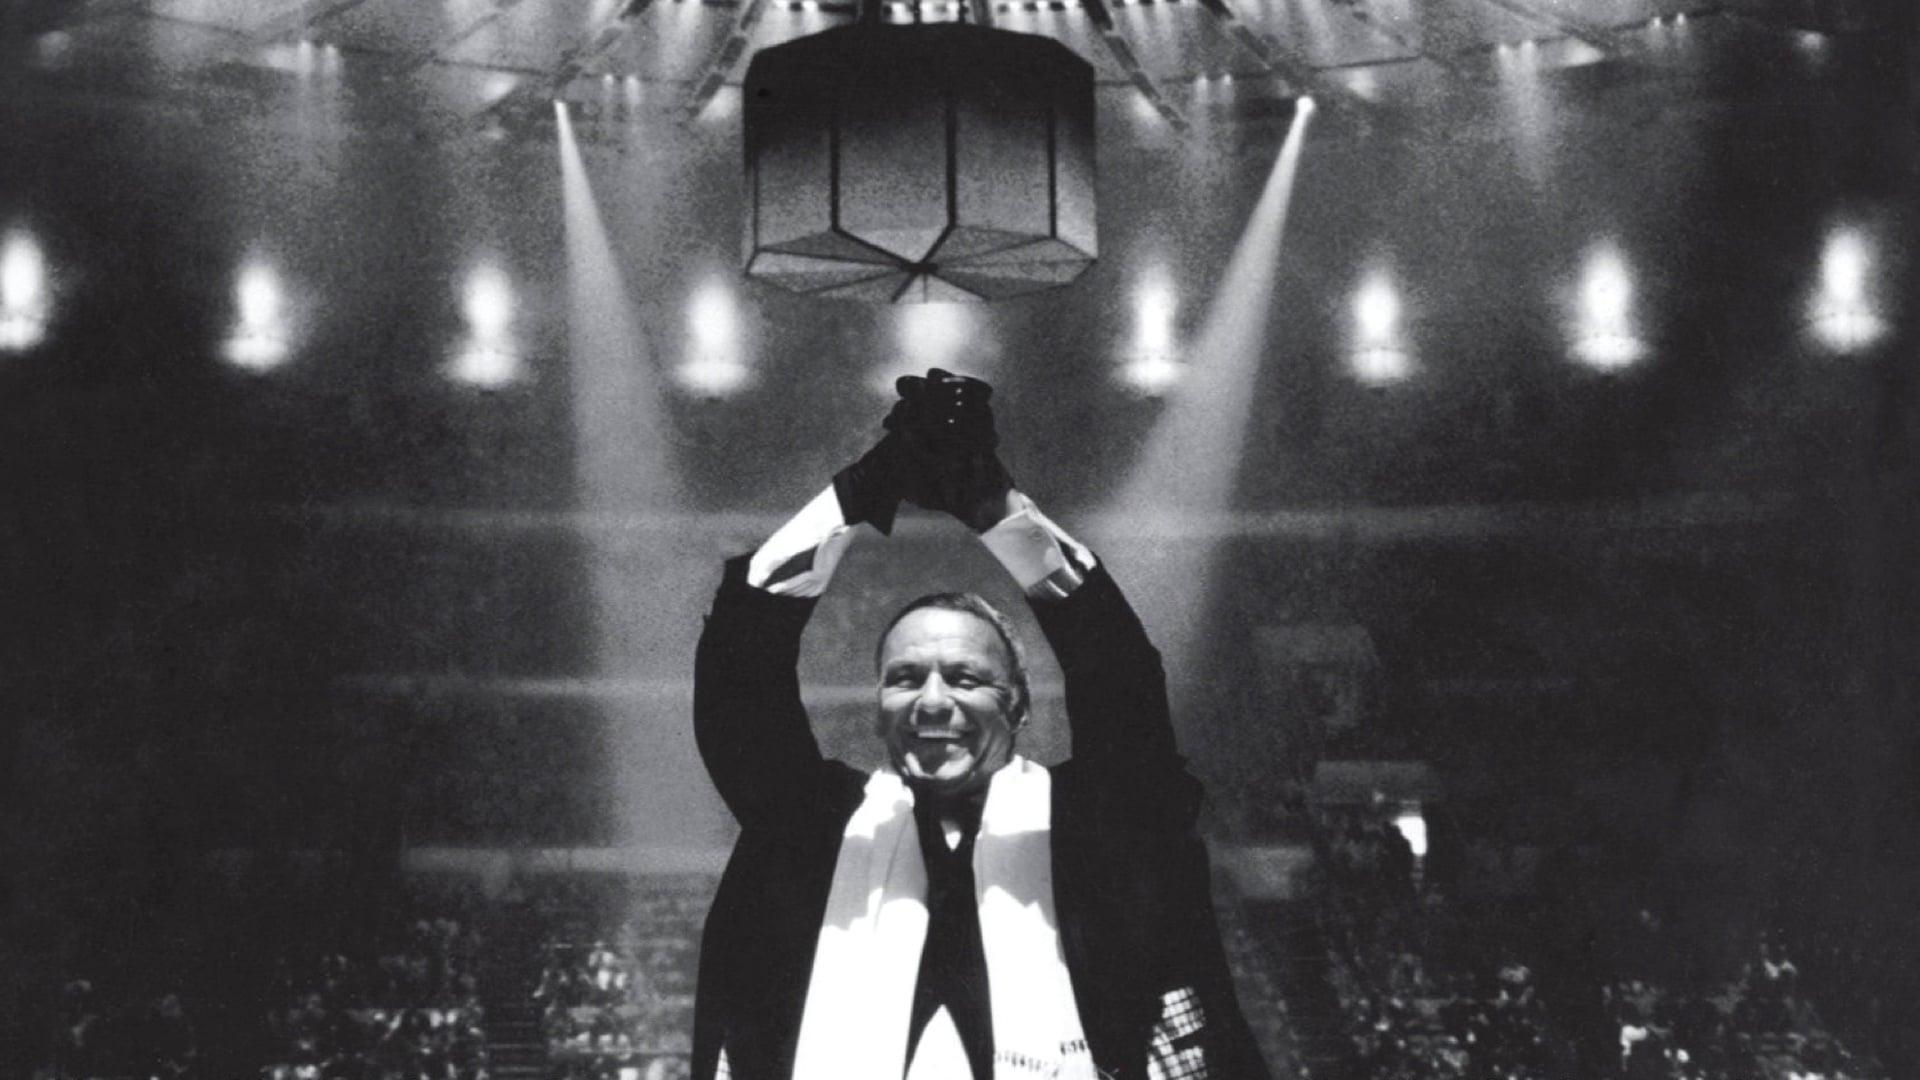 Frank Sinatra: The Main Event backdrop